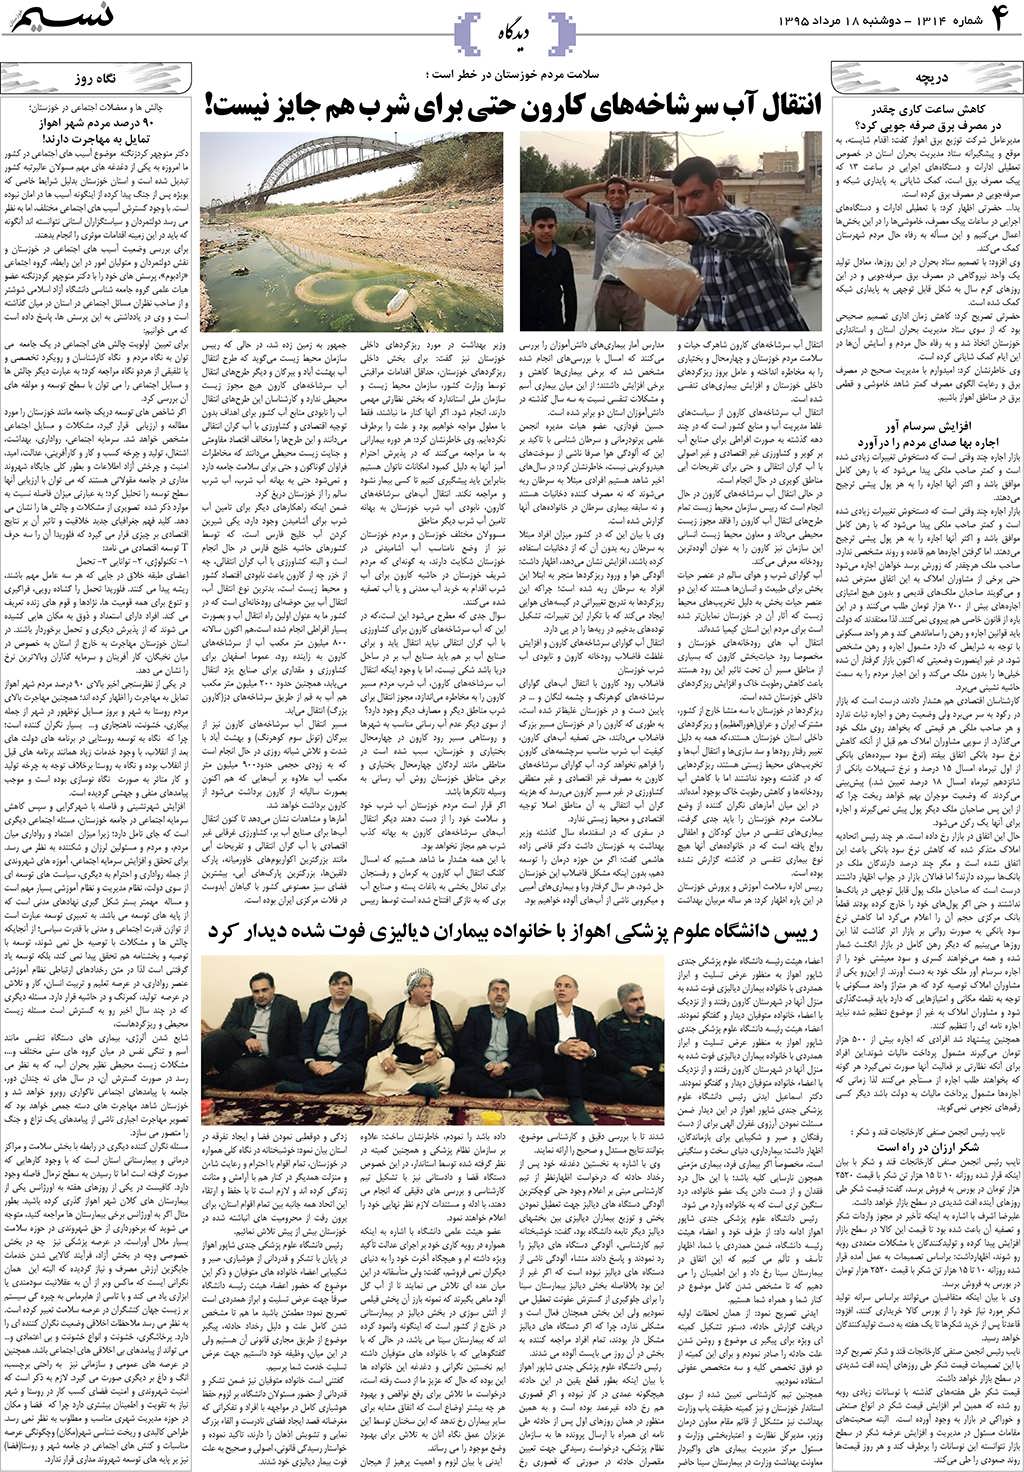 صفحه دیدگاه روزنامه نسیم شماره 1314